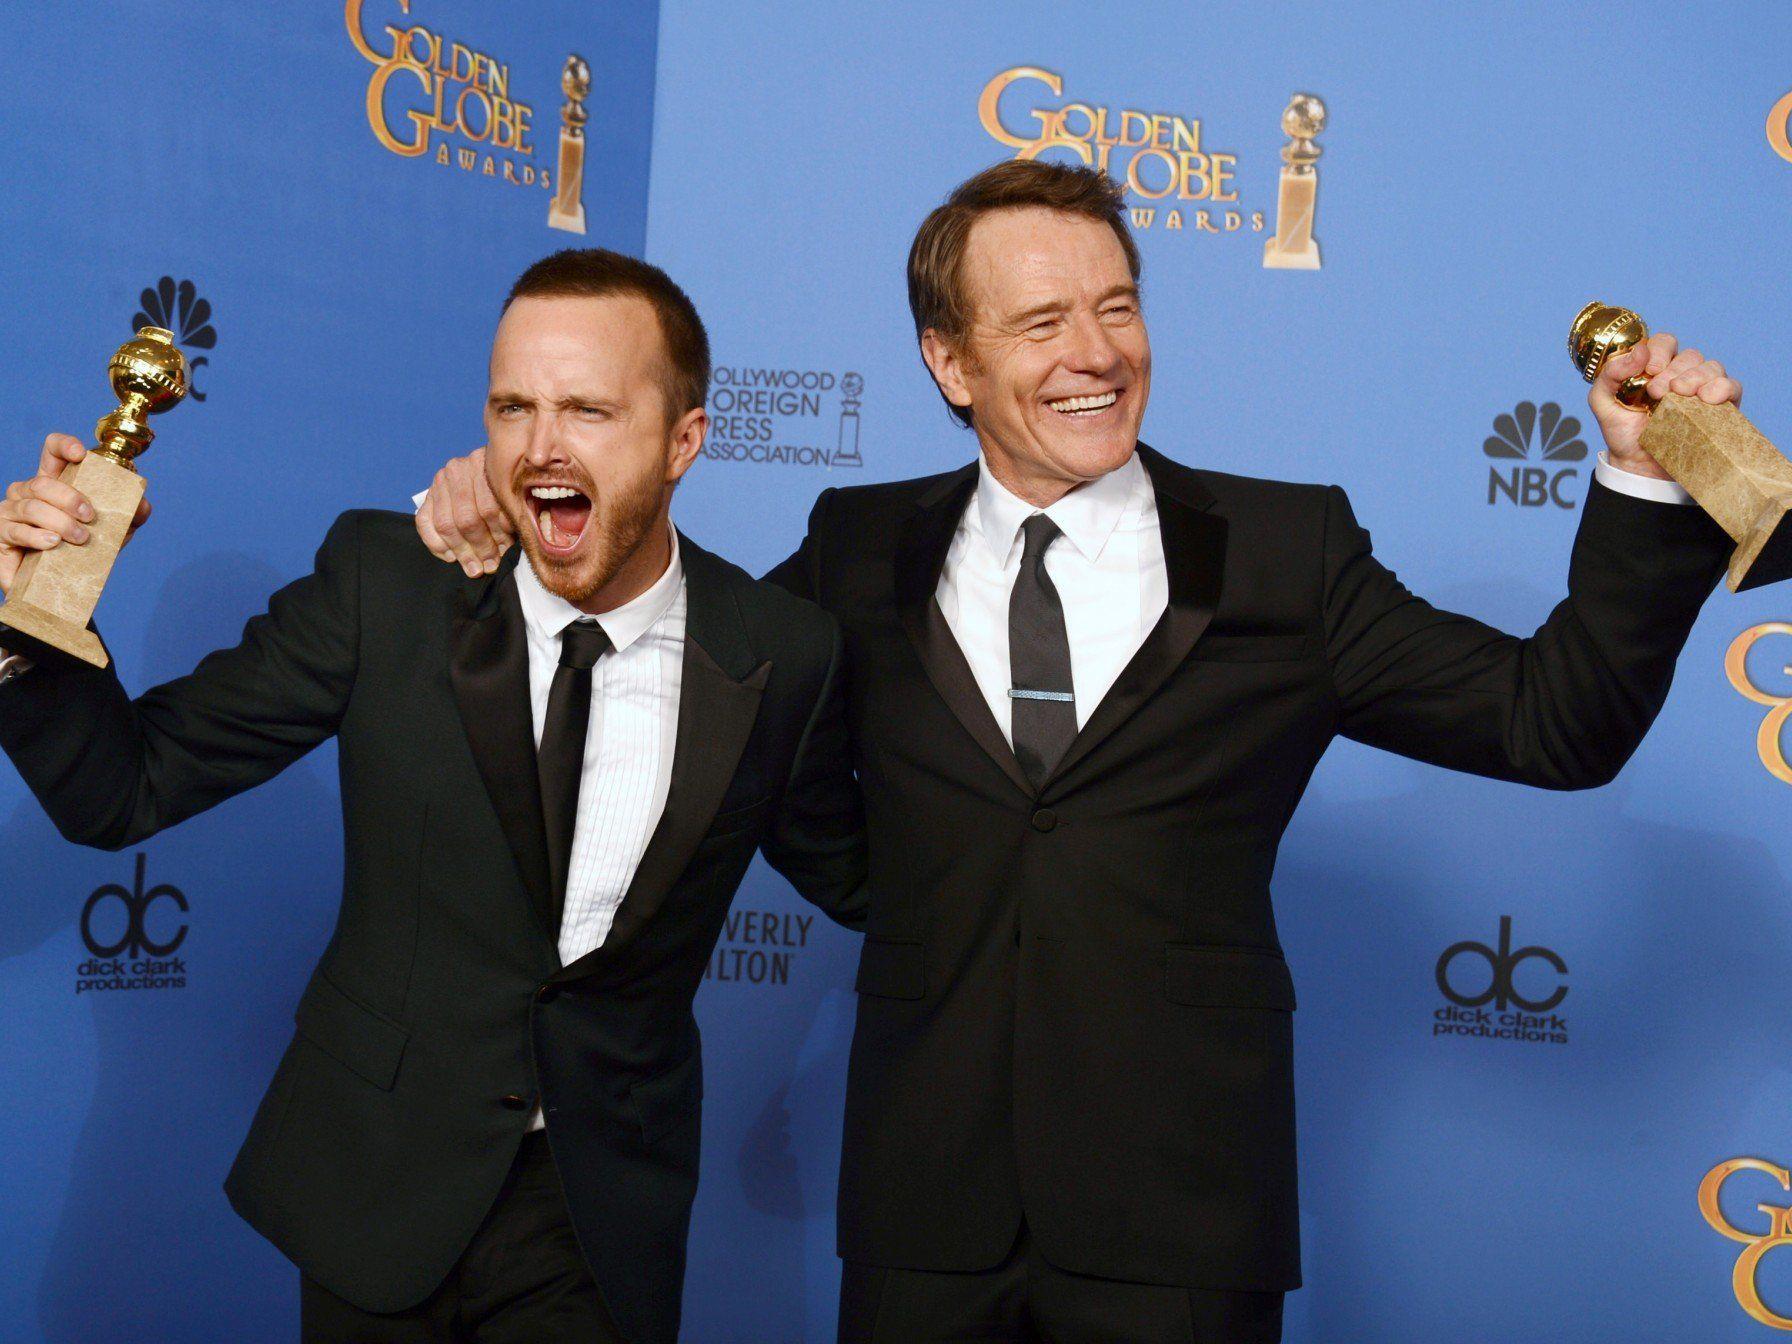 Golden Globes für die TV-Serie "Breaking Bad" als beste Drama-Serie.